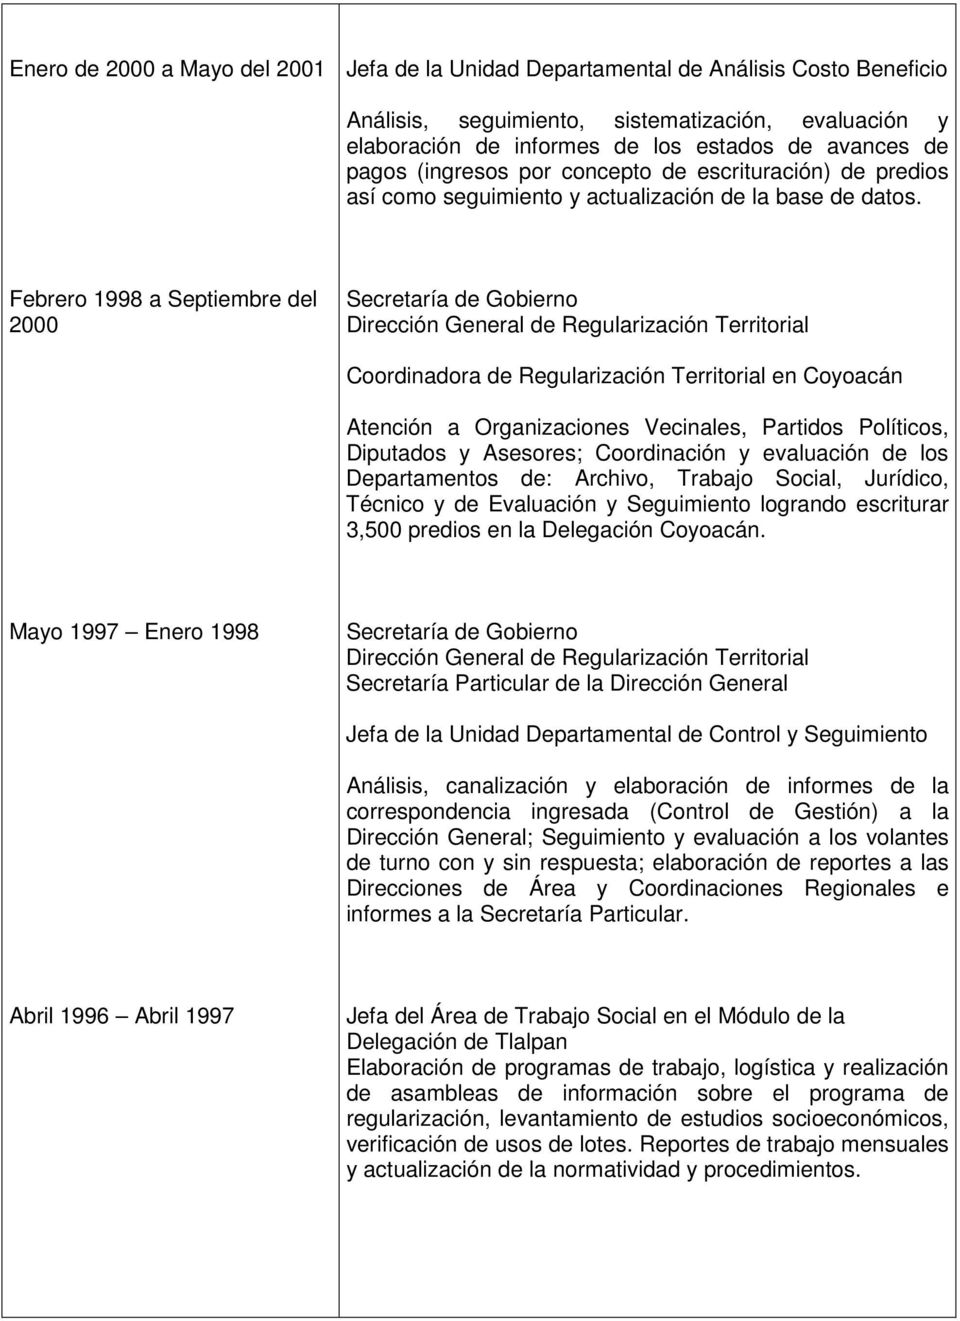 Febrero 1998 a Septiembre del 2000 Coordinadora de Regularización Territorial en Coyoacán Atención a Organizaciones Vecinales, Partidos Políticos, Diputados y Asesores; Coordinación y evaluación de